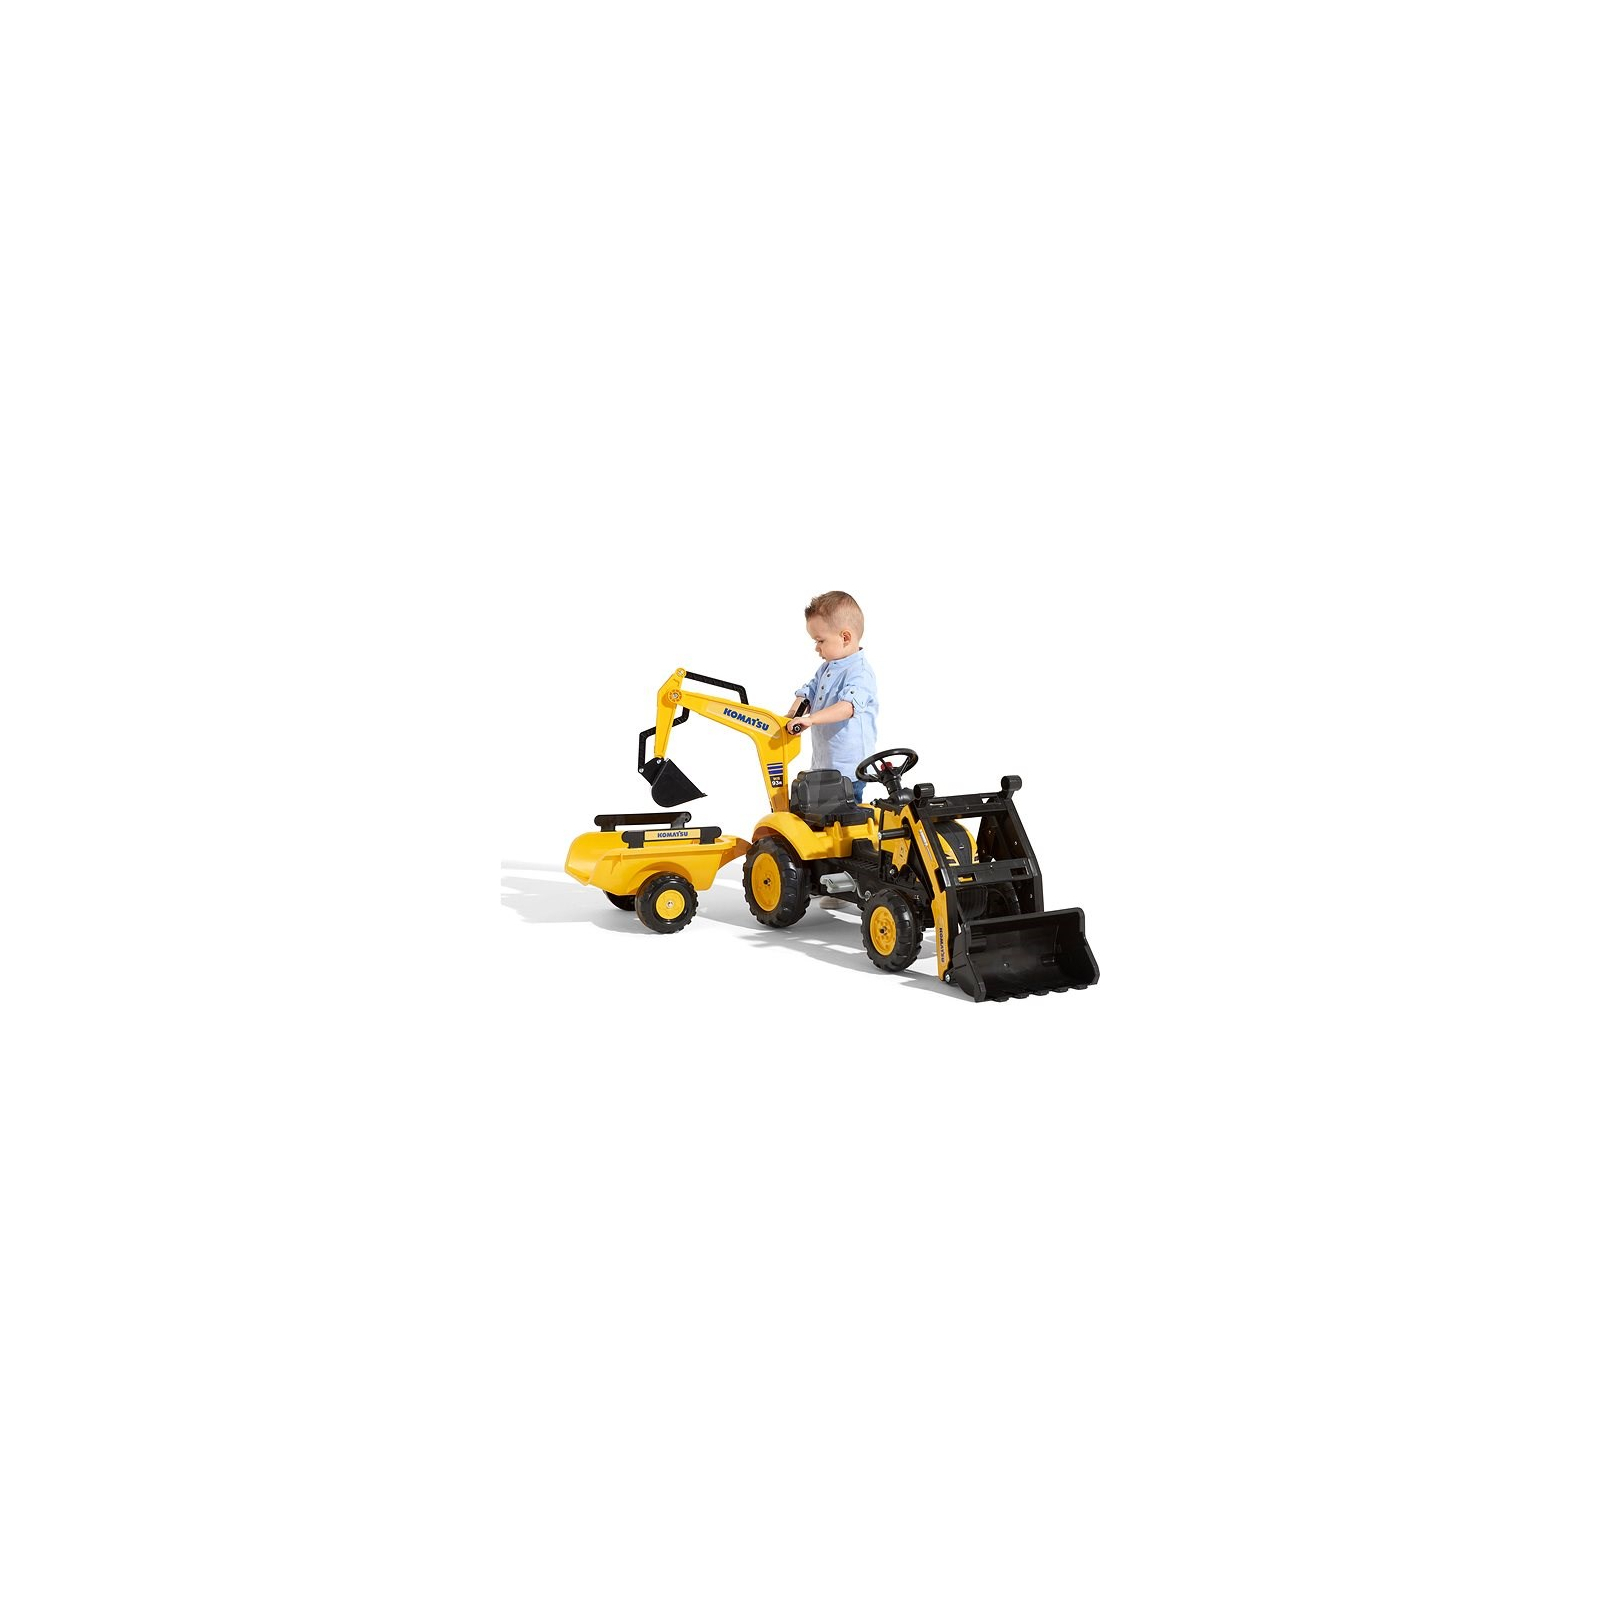 Веломобиль Falk Komatsu трактор на педалях с прицепом, передним и задним ковшом Желтый (2076N) изображение 2